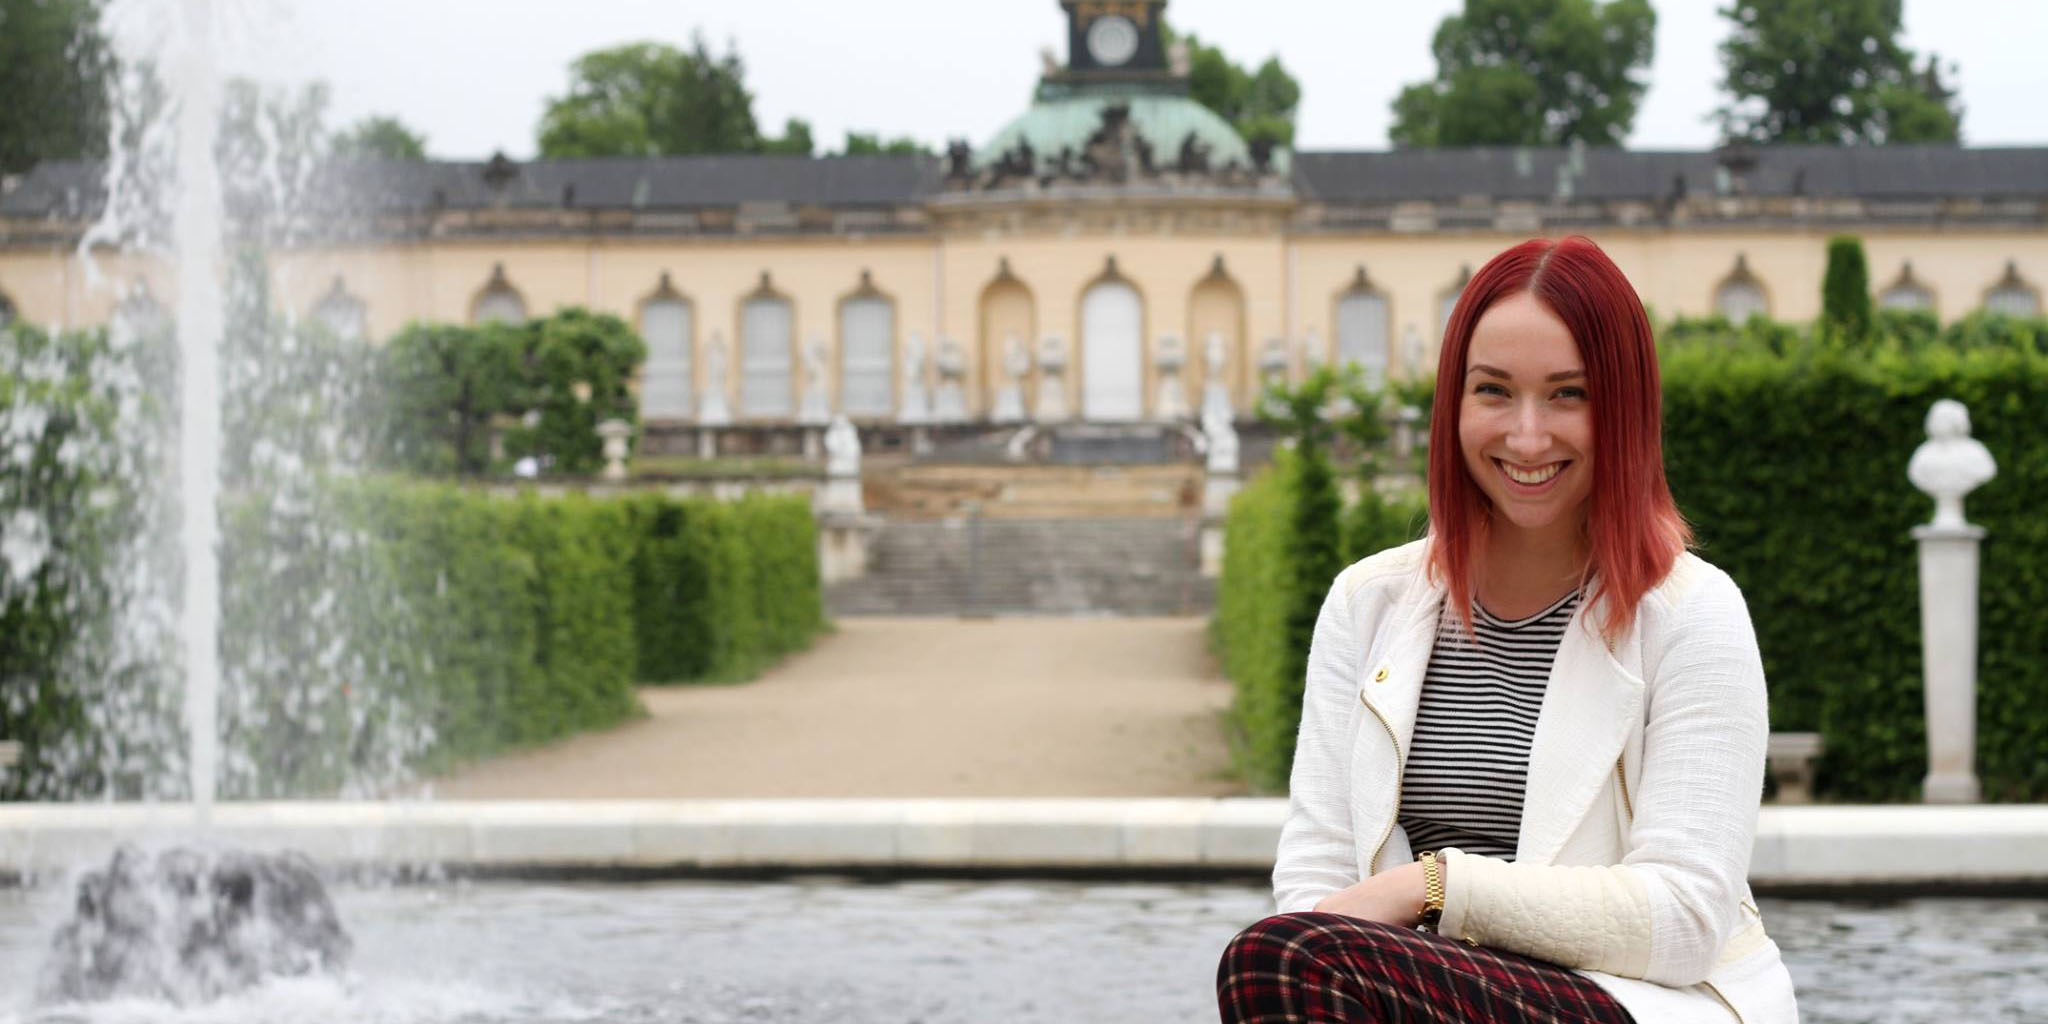 Brieanah Gouveia smiles for a photo next to a palace garden fountain